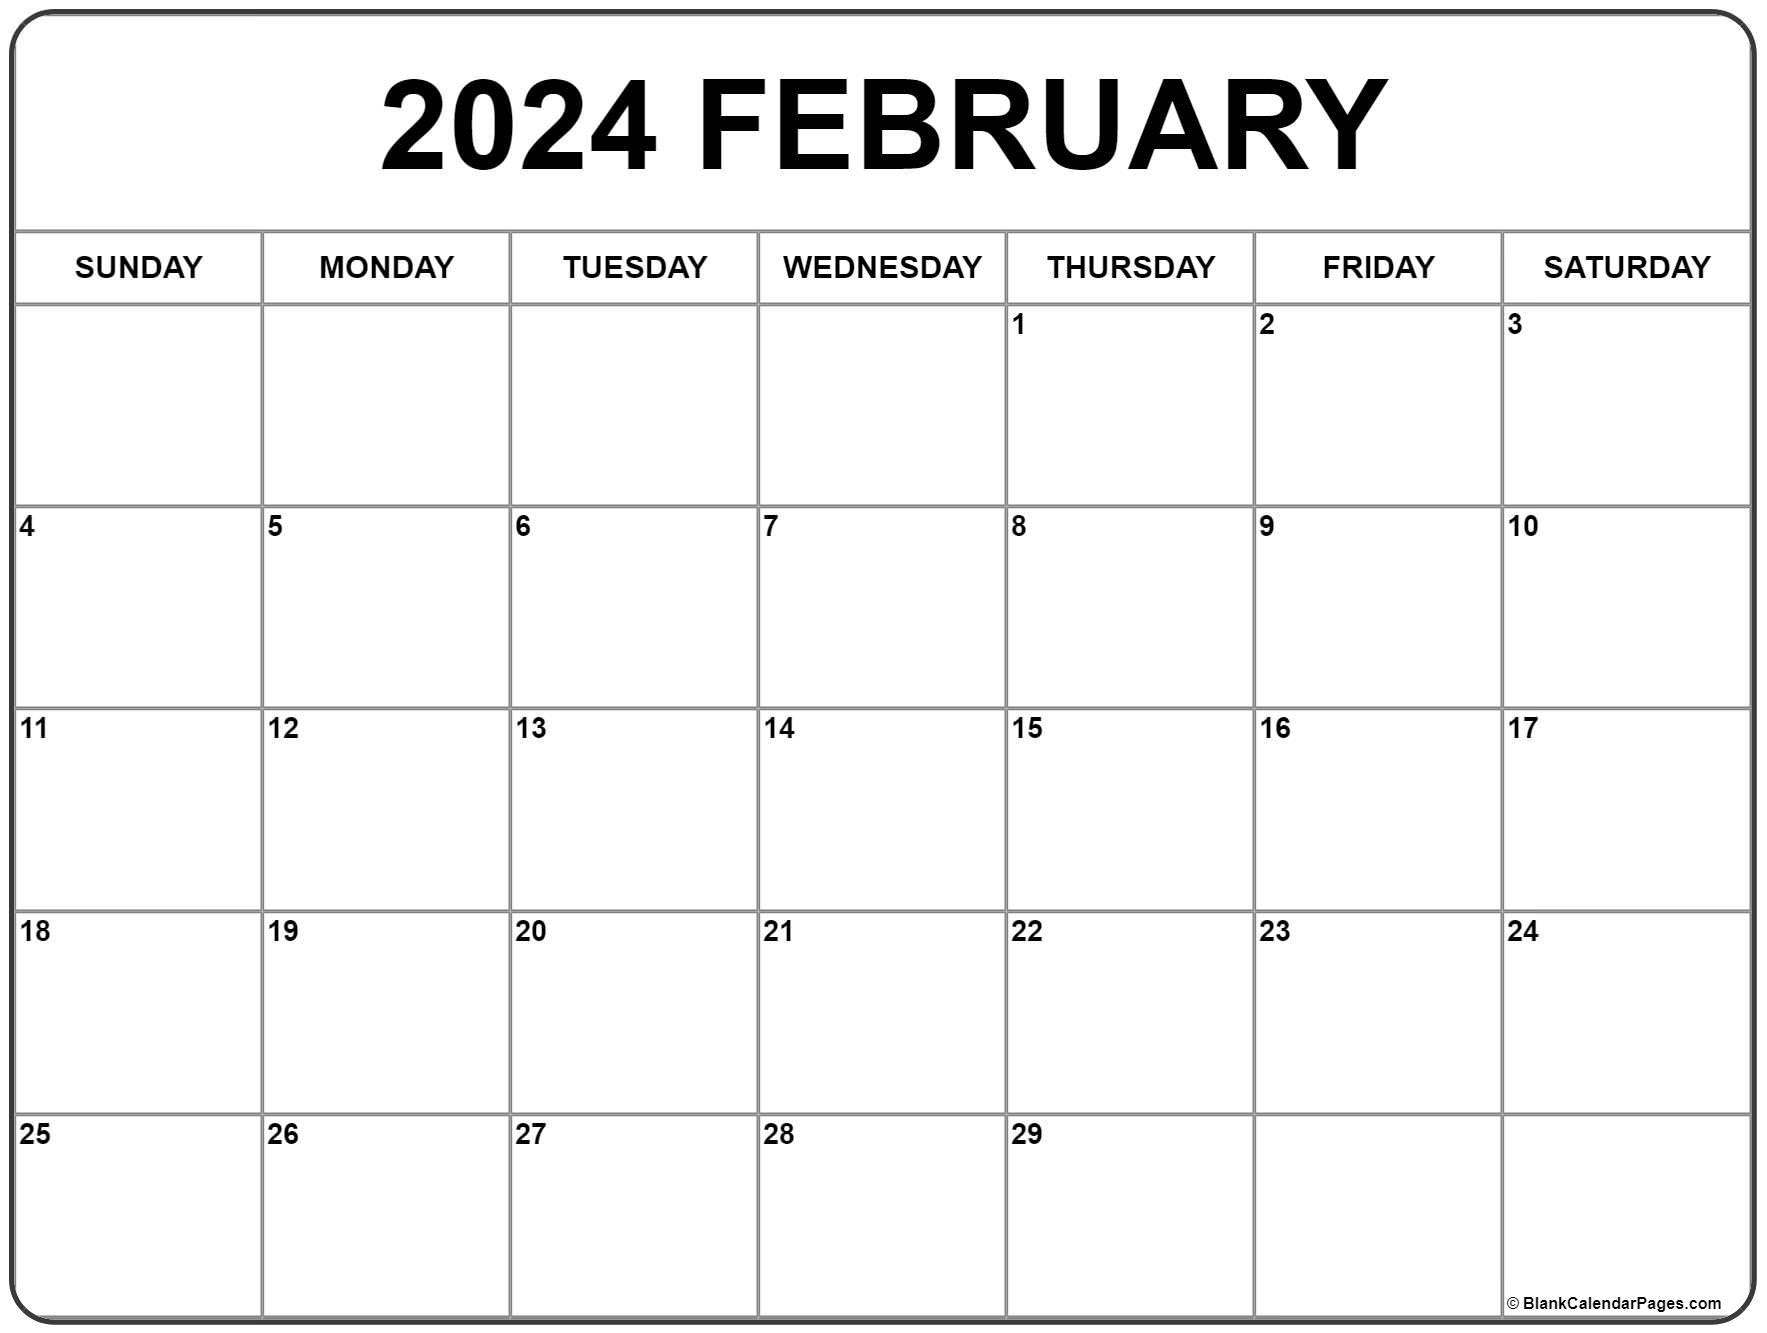 Calendar For February 2021 February 2021 calendar | free printable monthly calendars